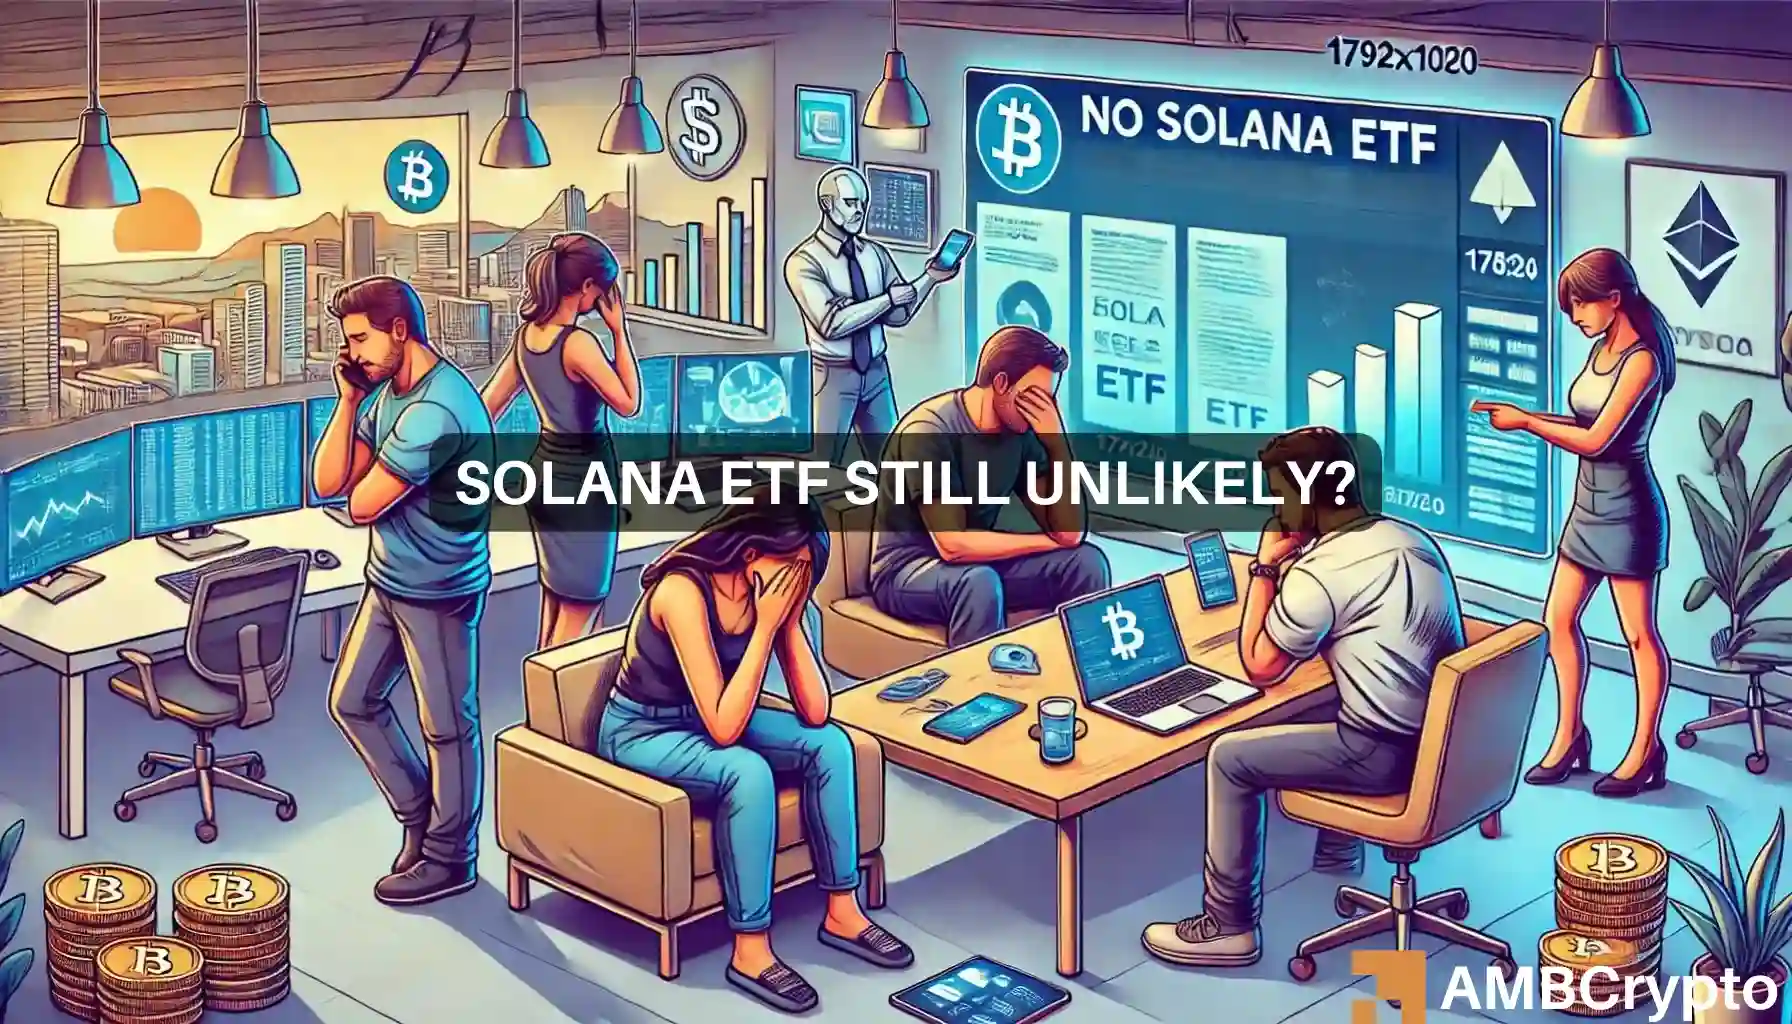 Solana ETF still unlikely?